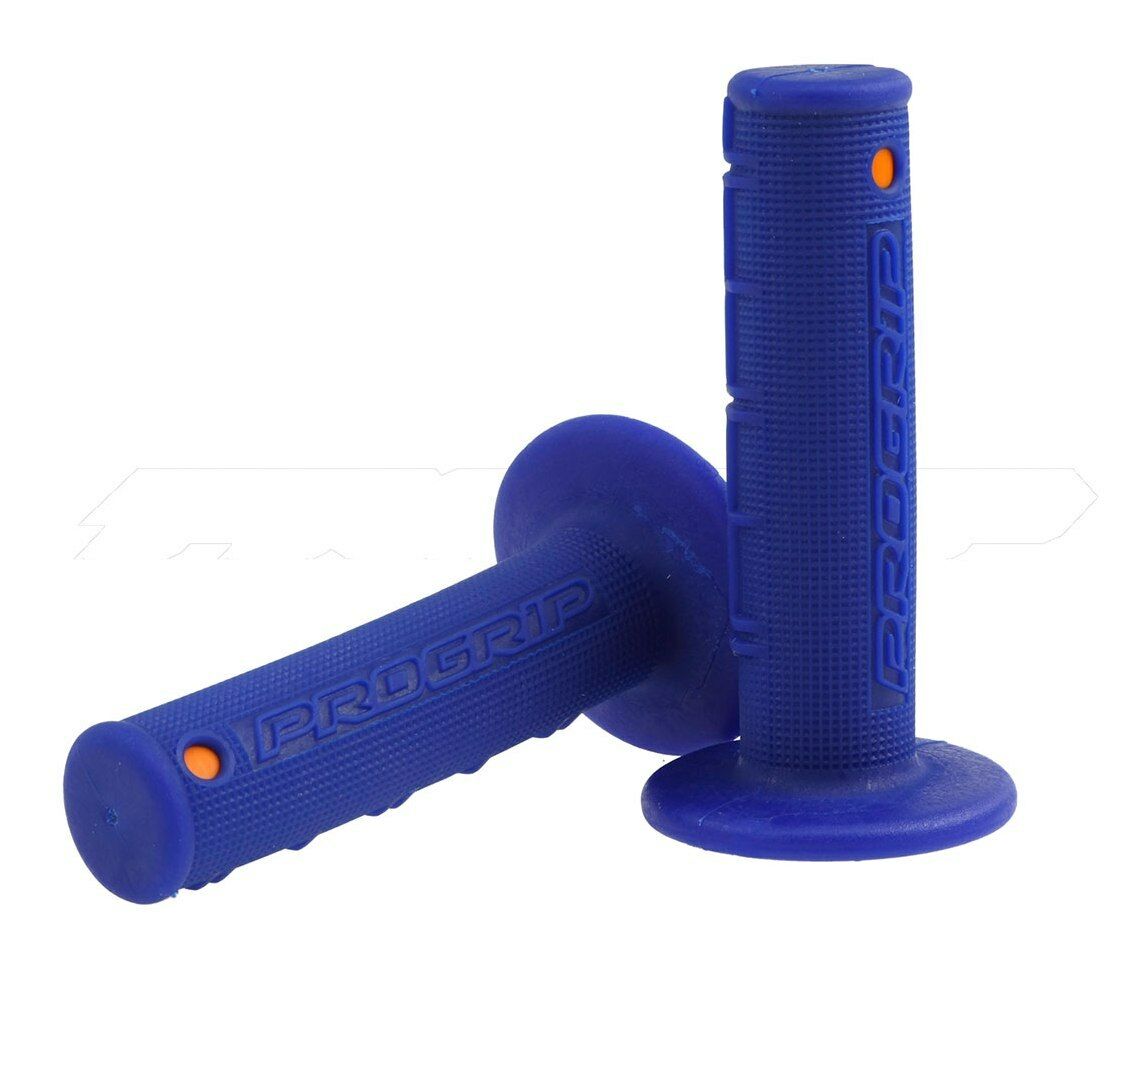 Pro Grip 799 Gel Grips Blue Orange - Pro Grip